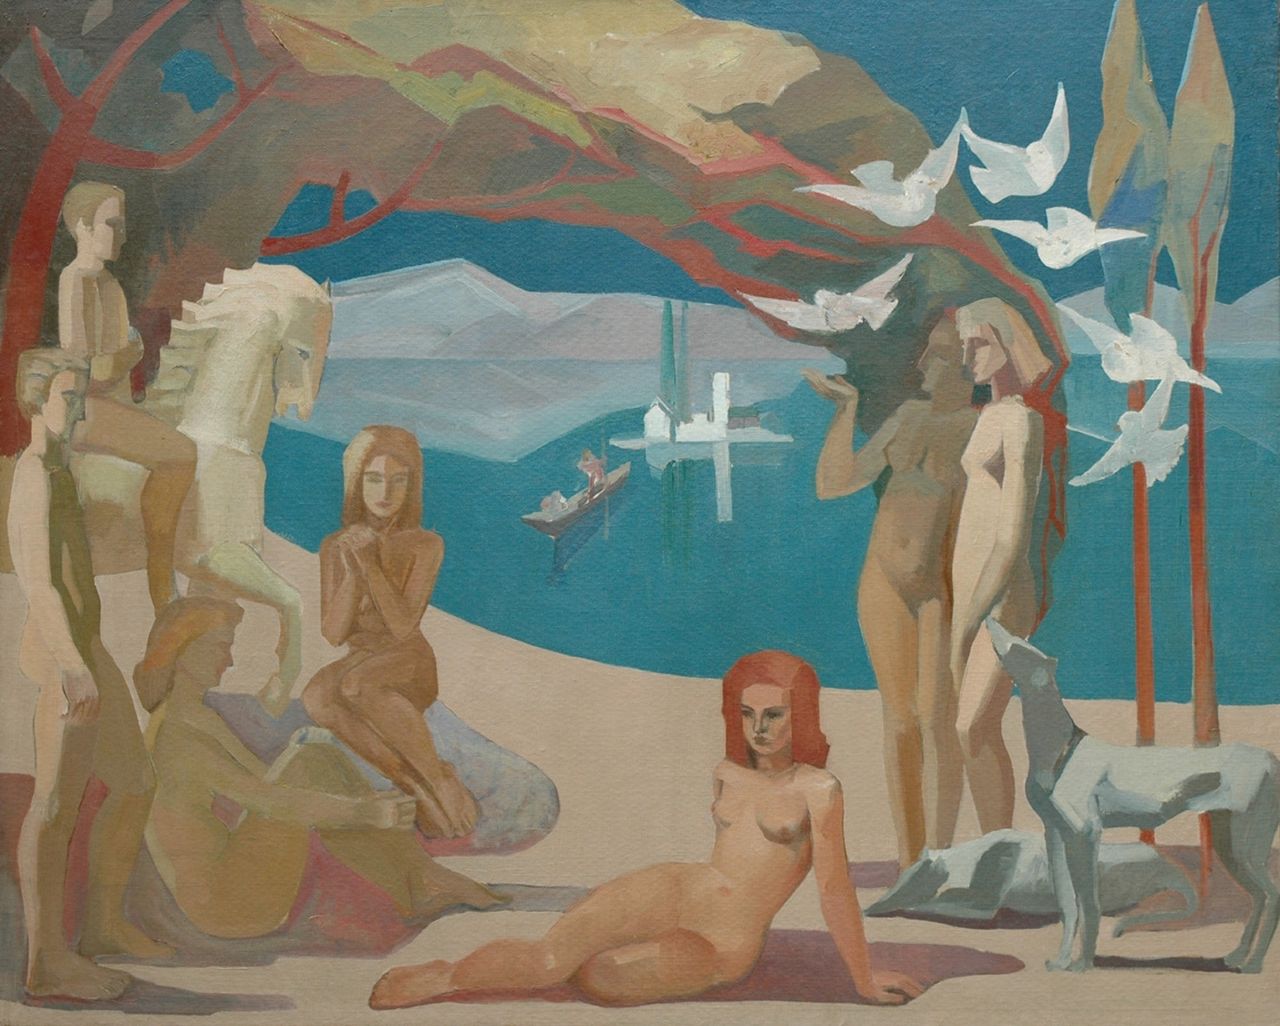 Niehaus K.  | Kasper Niehaus, Landscape with figures, oil on canvas 122.5 x 151.3 cm